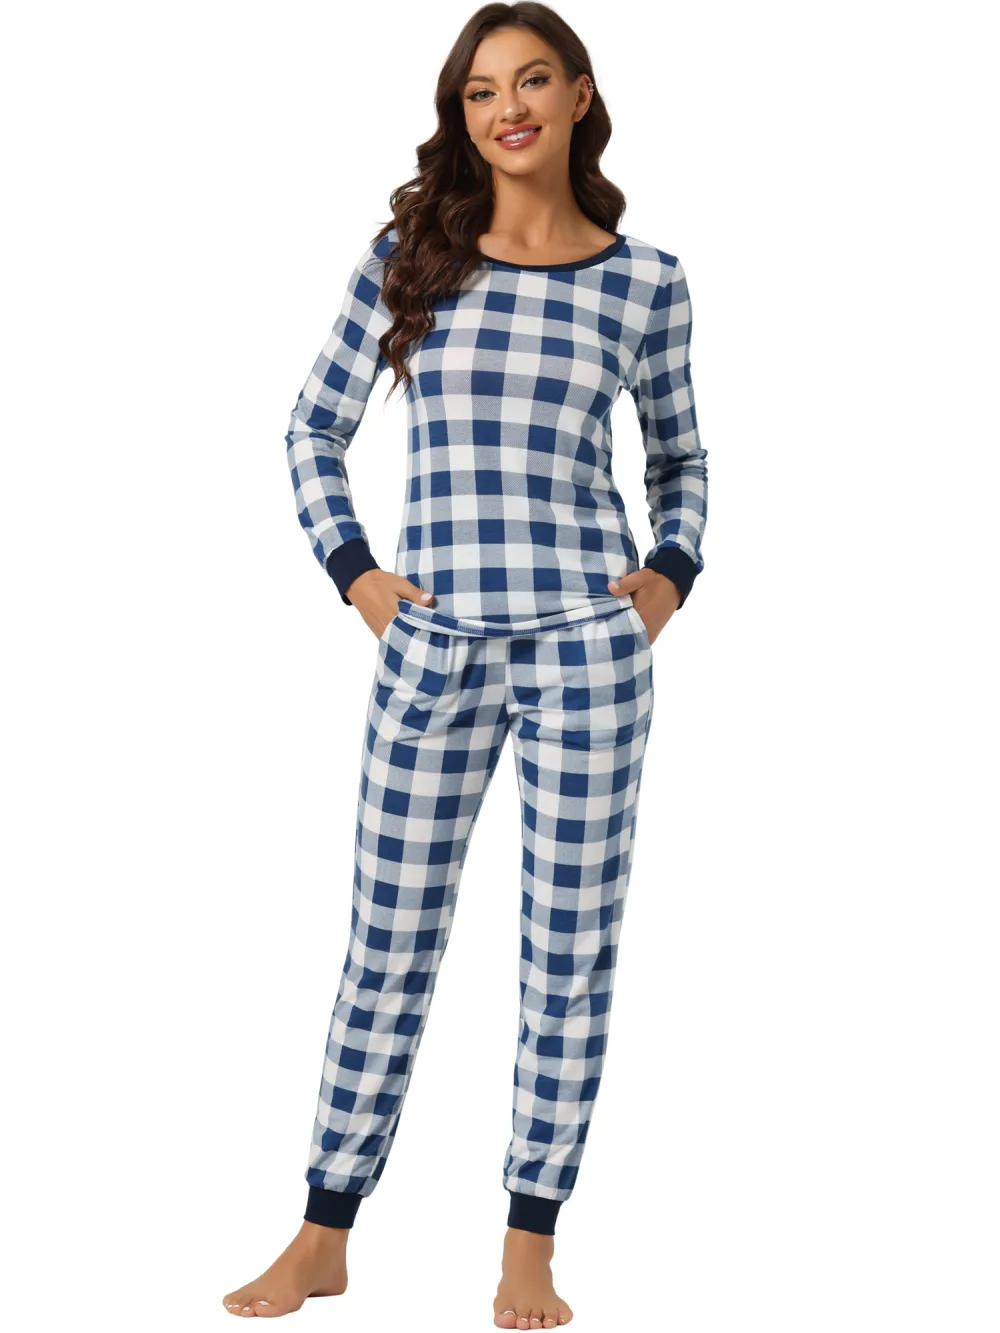 cheibear - Round Neck Winter Plaid Pajamas Set